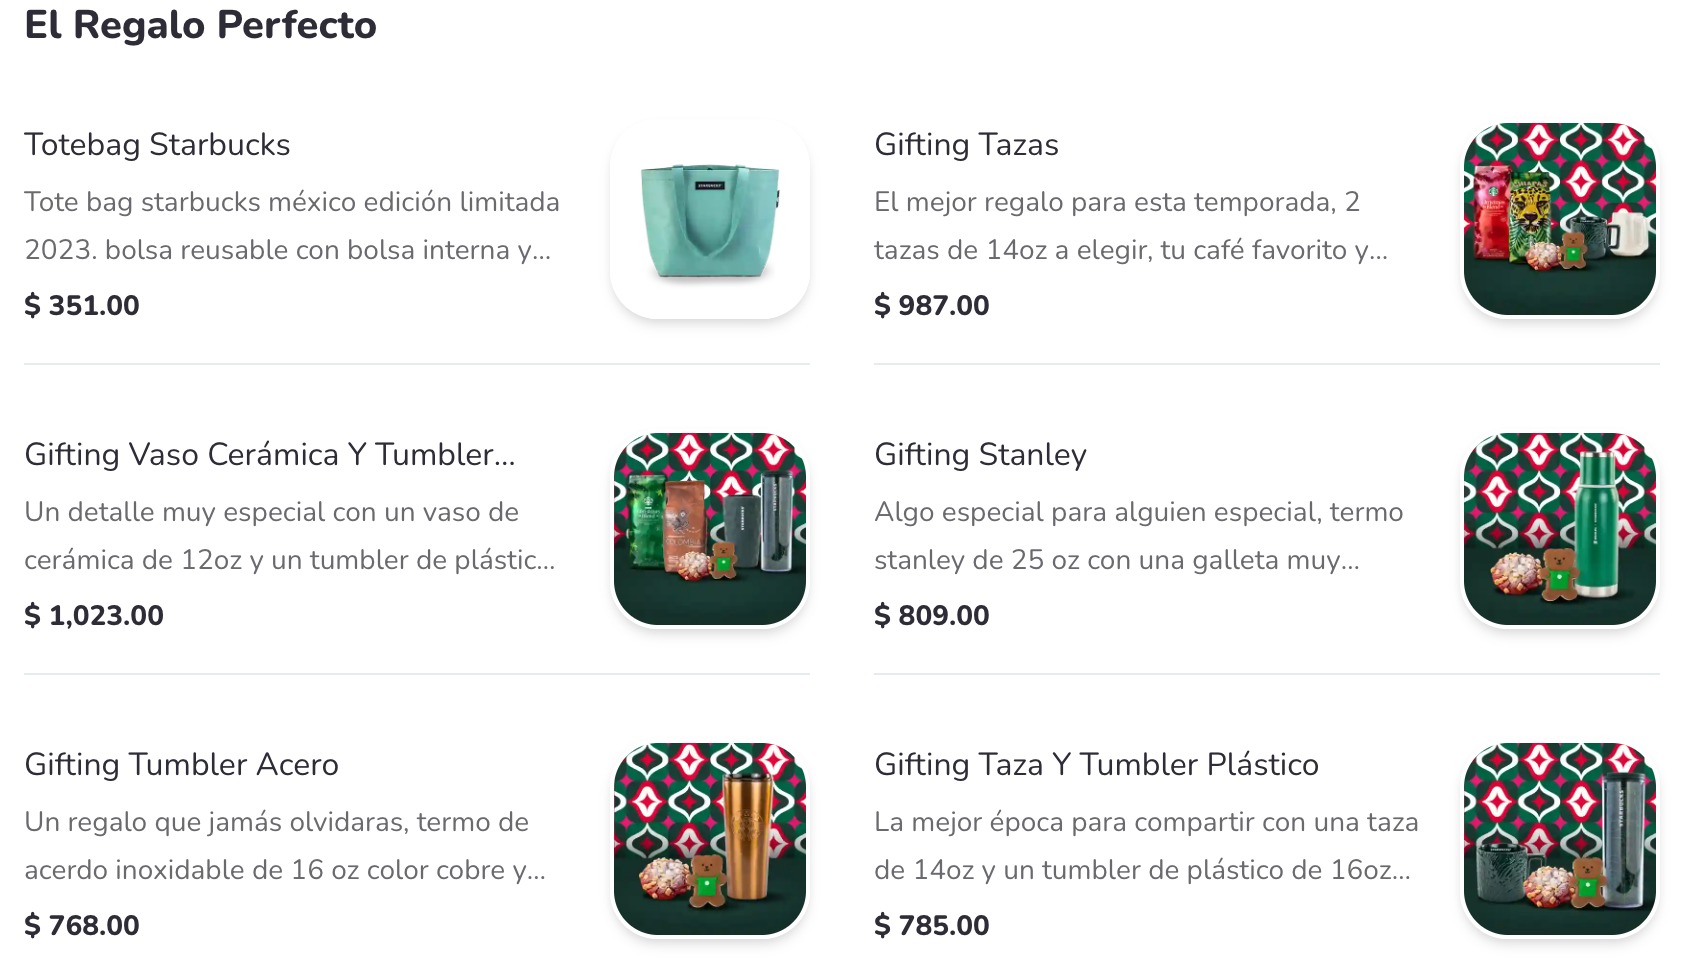 Estos son algunos de los paquetes y regalos de Starbucks que puedes adquirir a través de Rappi